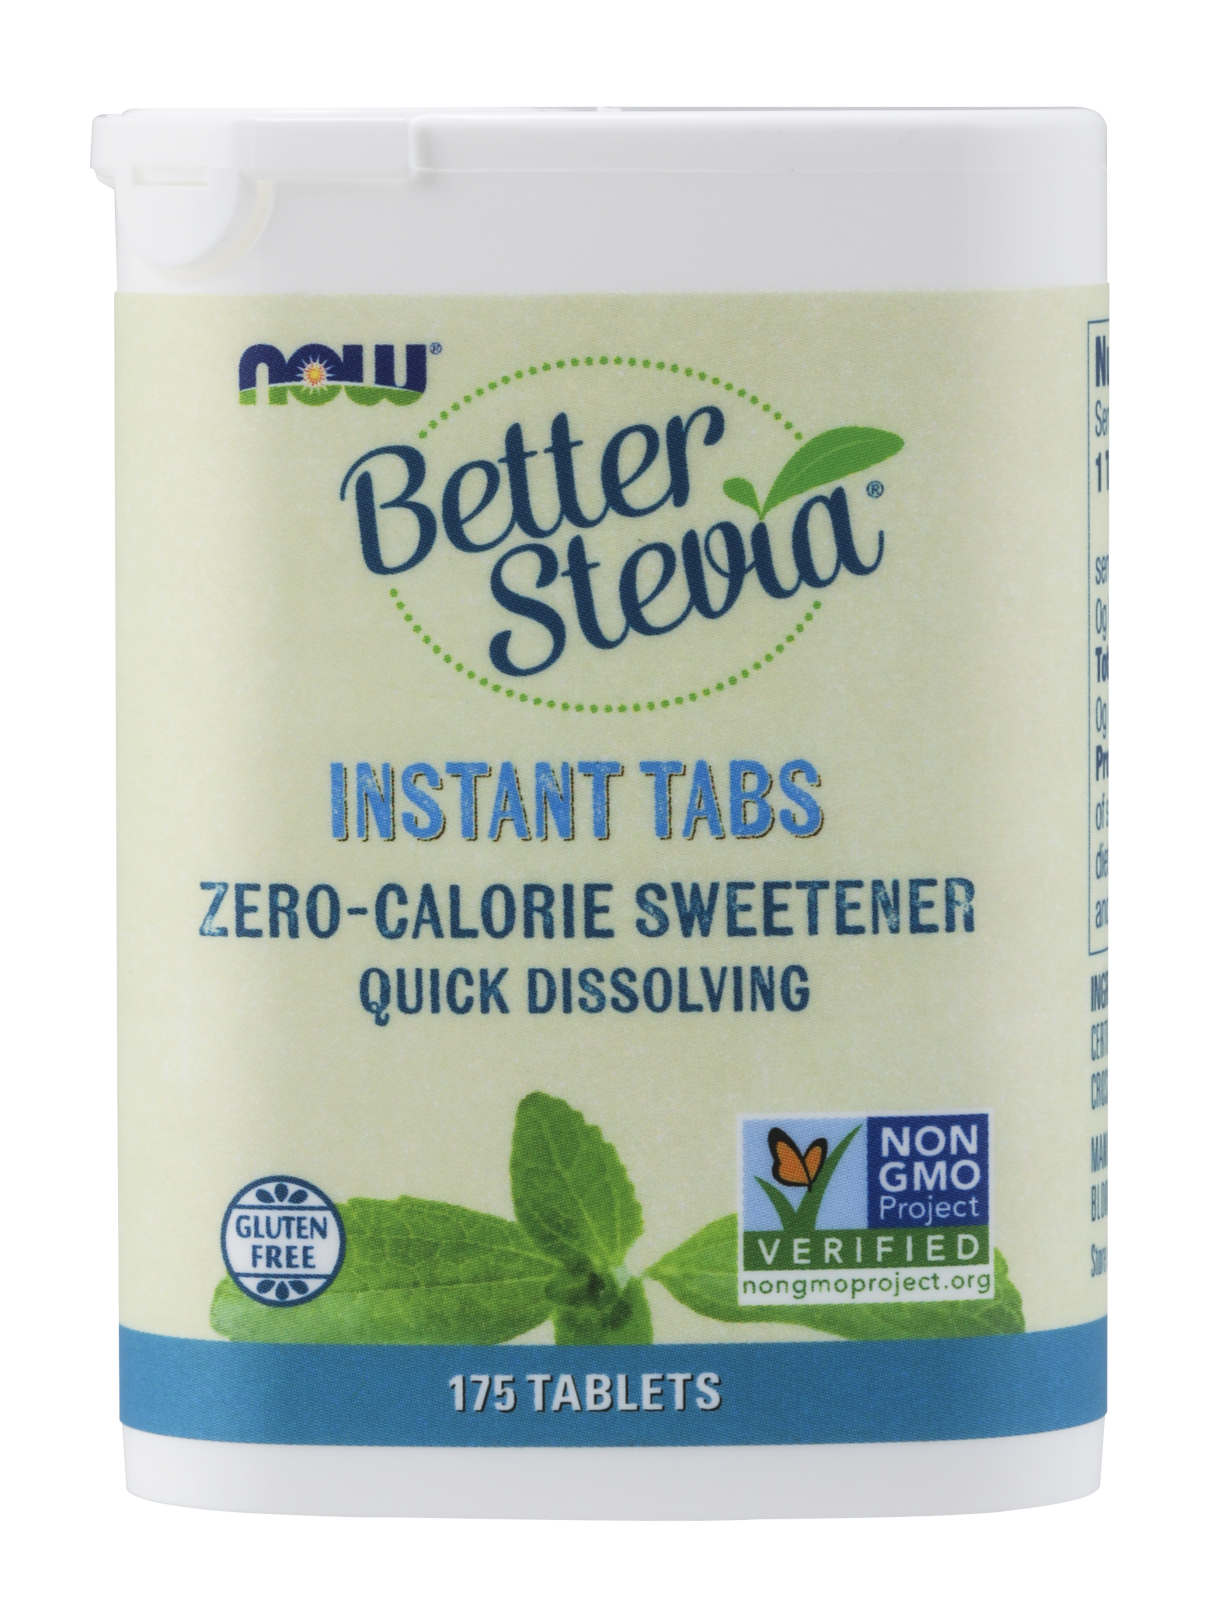 Better Stevia Instant Tabs